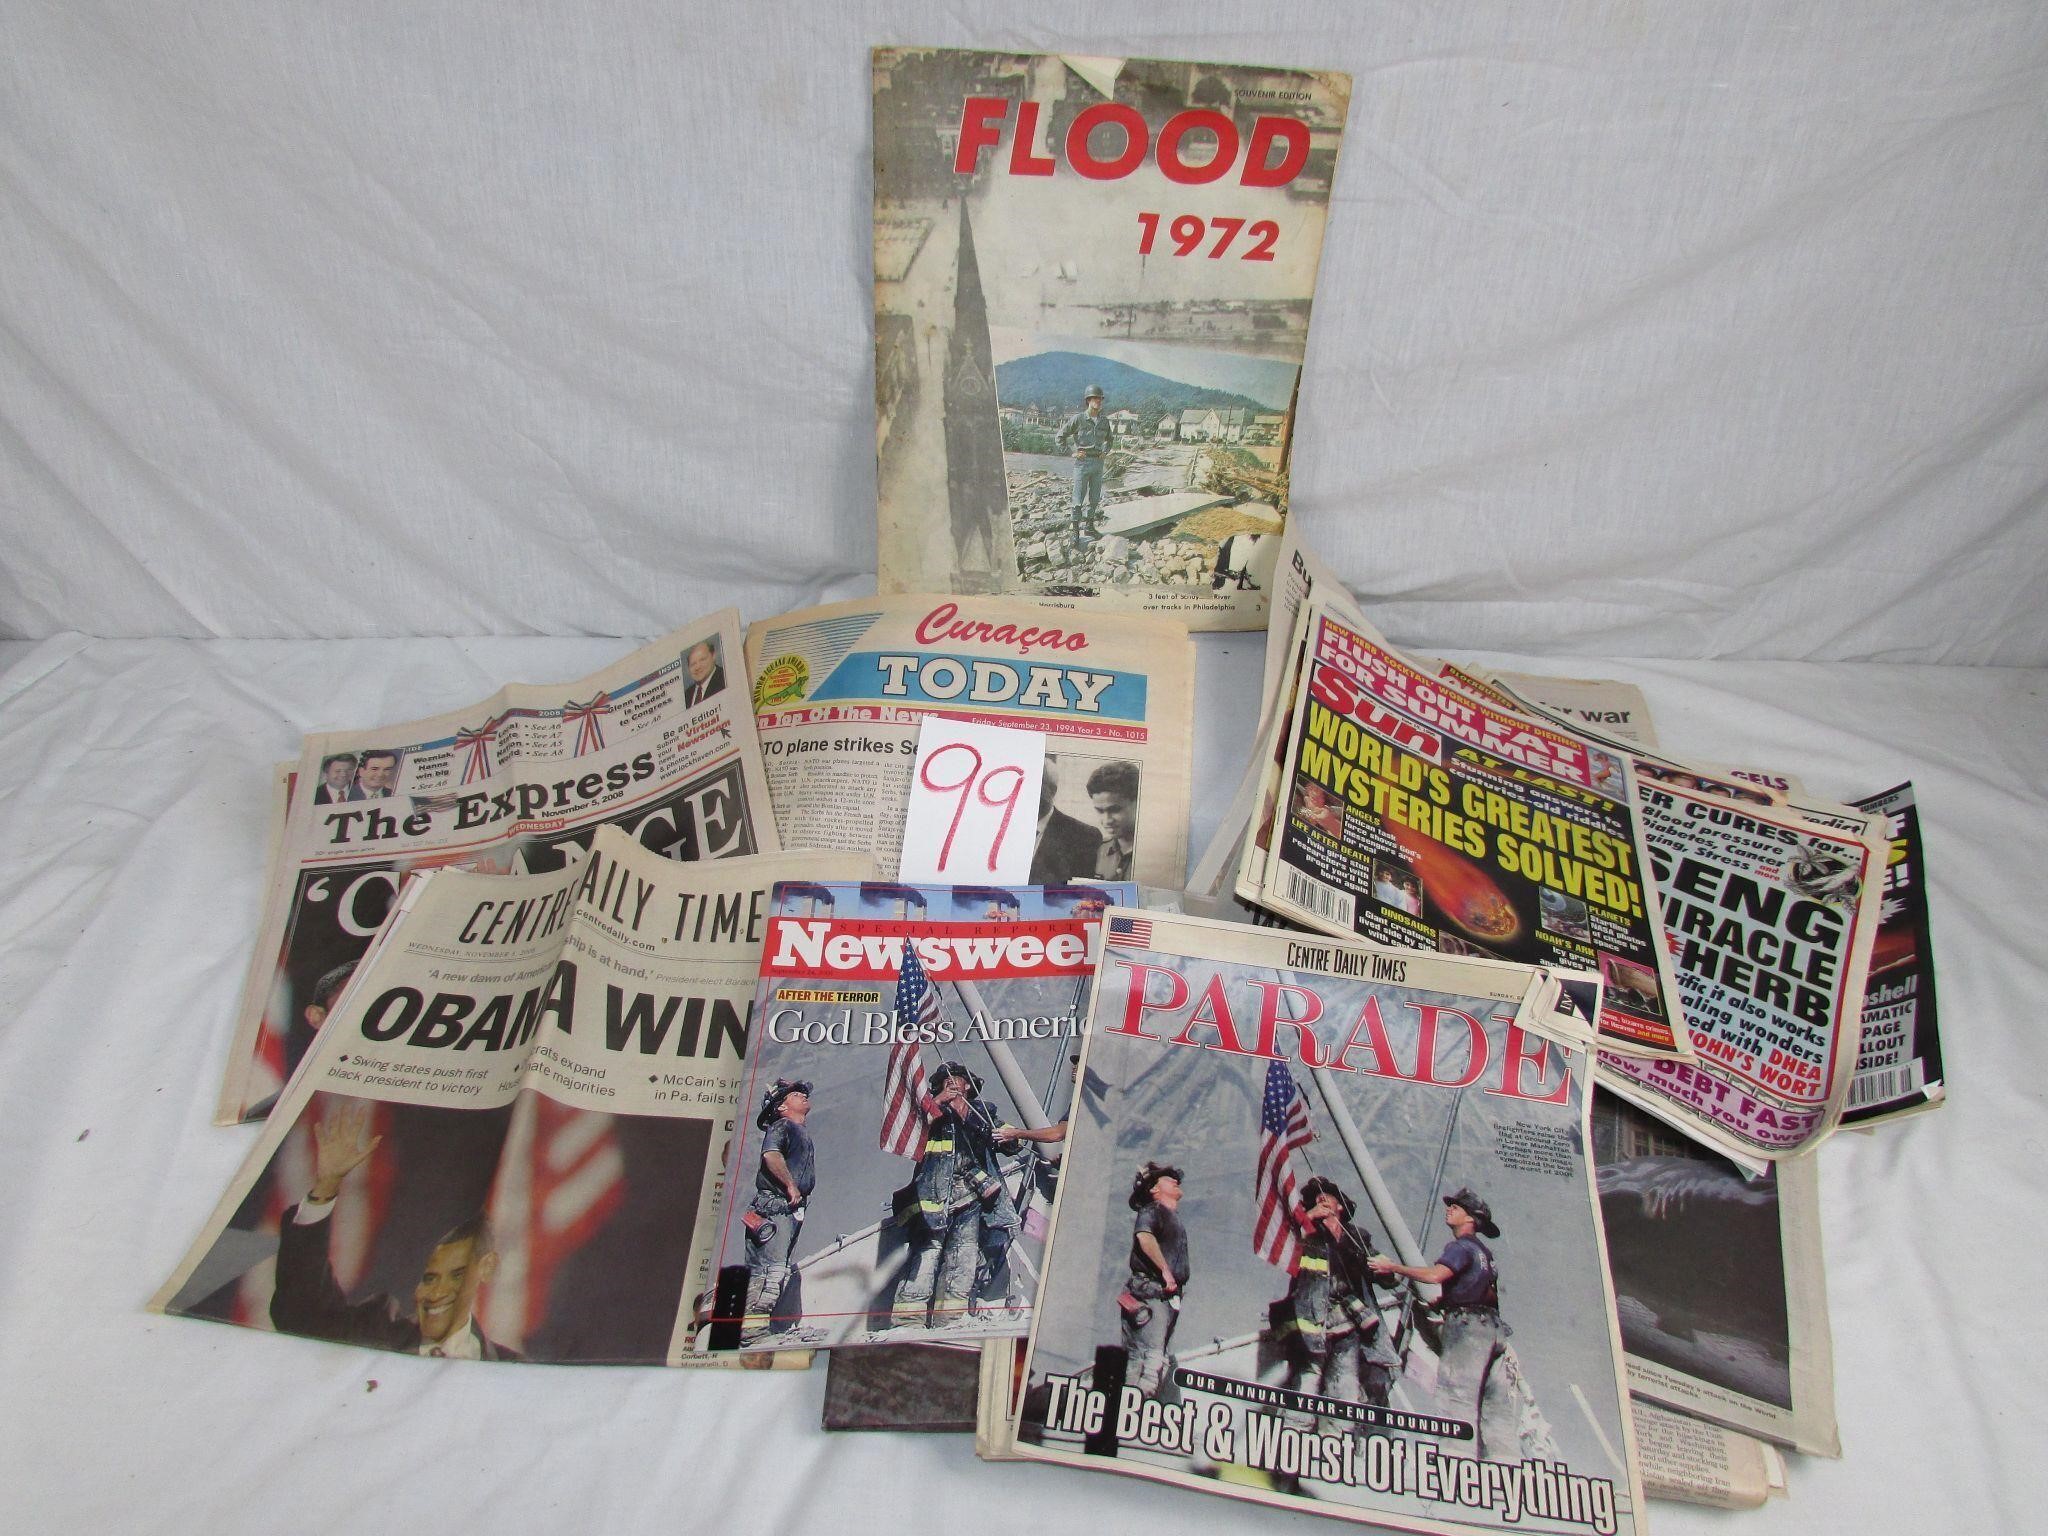 Flood Book 1972 - 9/11 Newspapers - Sun Tabloid